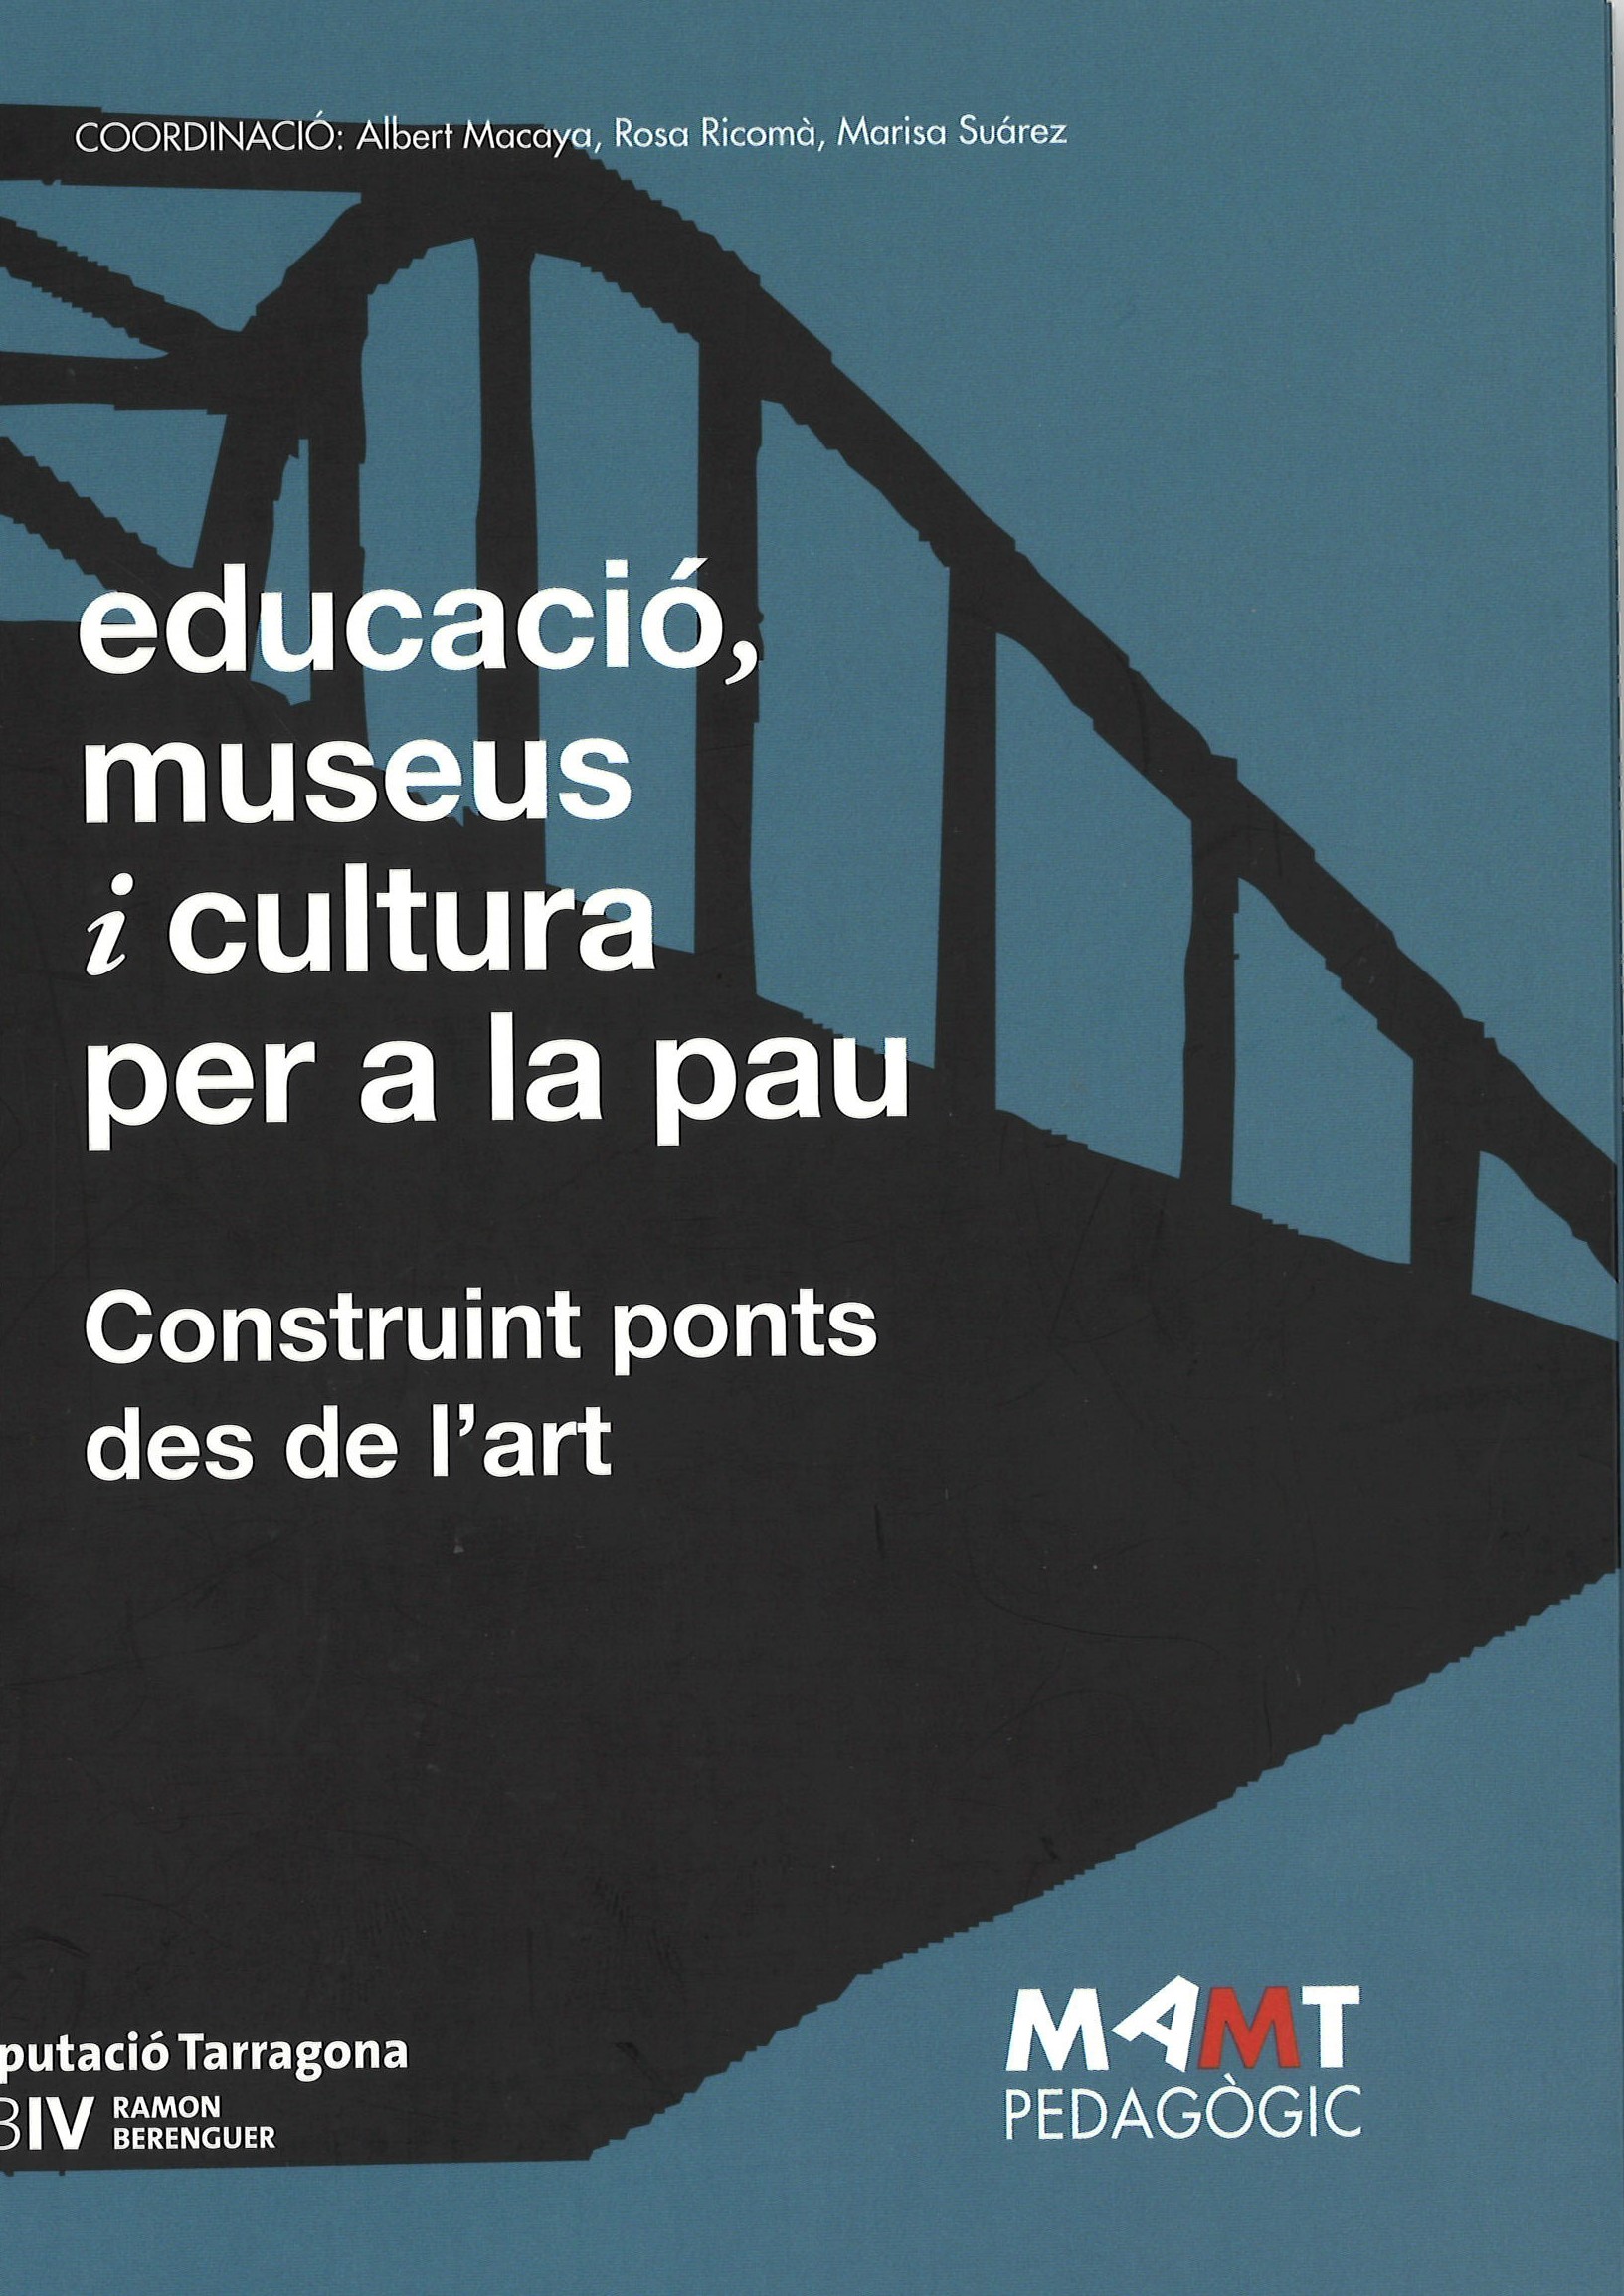 Imagen de portada del libro Educació, museus i cultura per a la pau